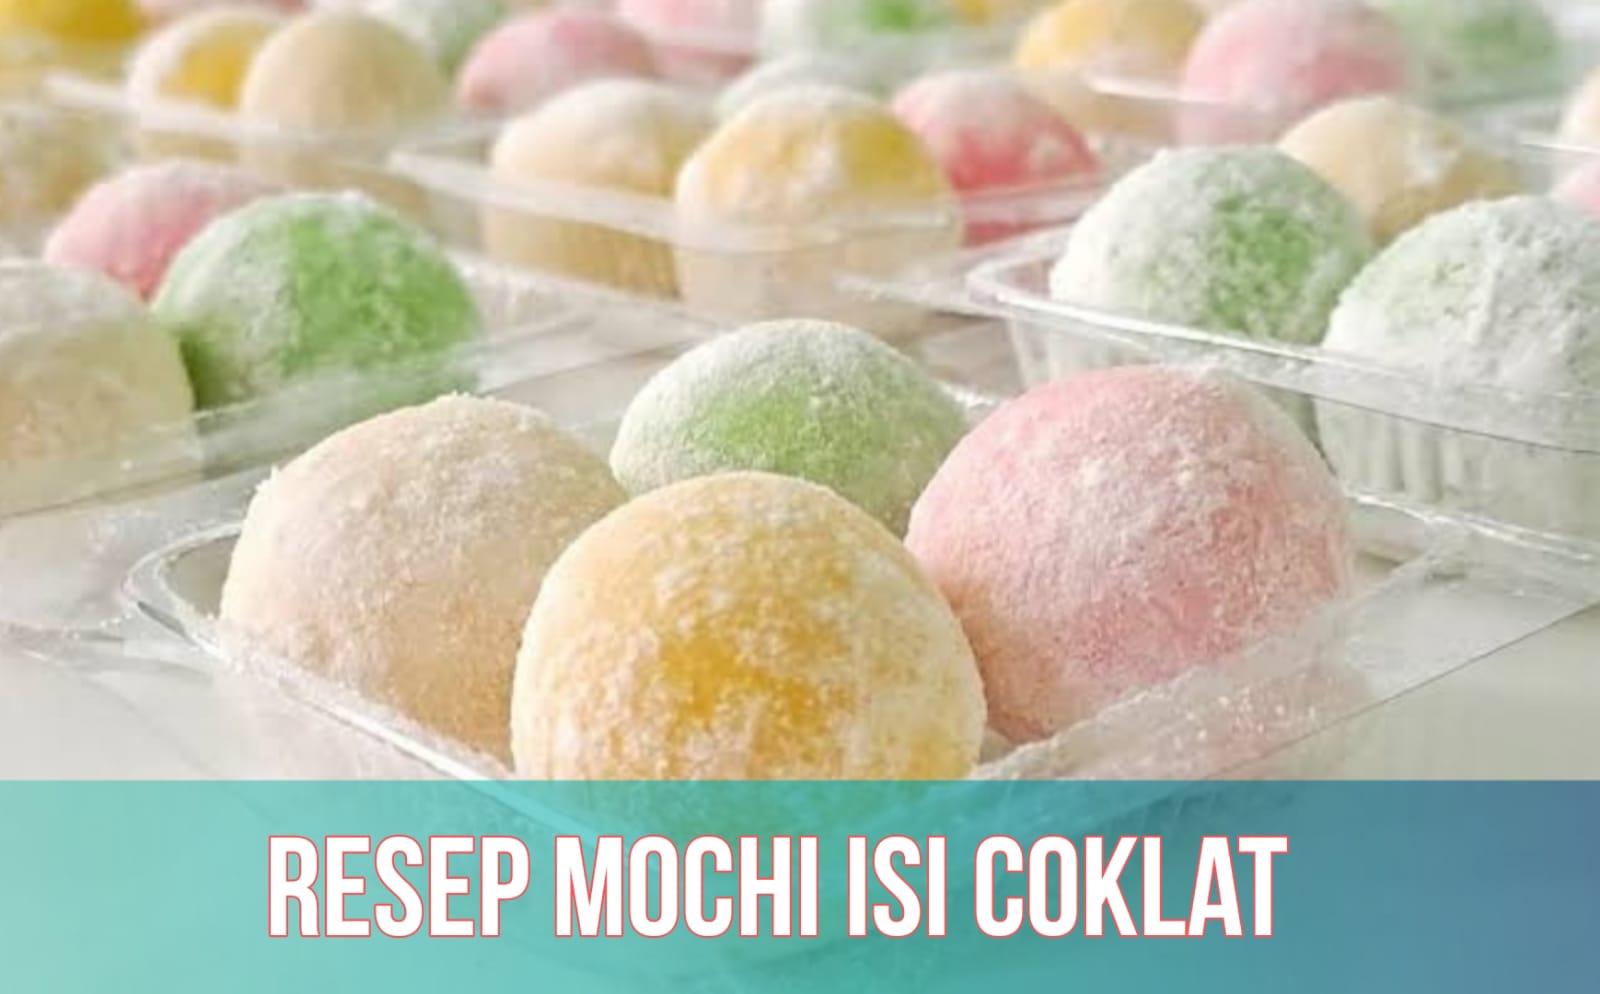 Resep Mochi Isi Coklat yang Lezat, Cocok untuk Merayakan Hari Mochi Nasional 8 Agustus